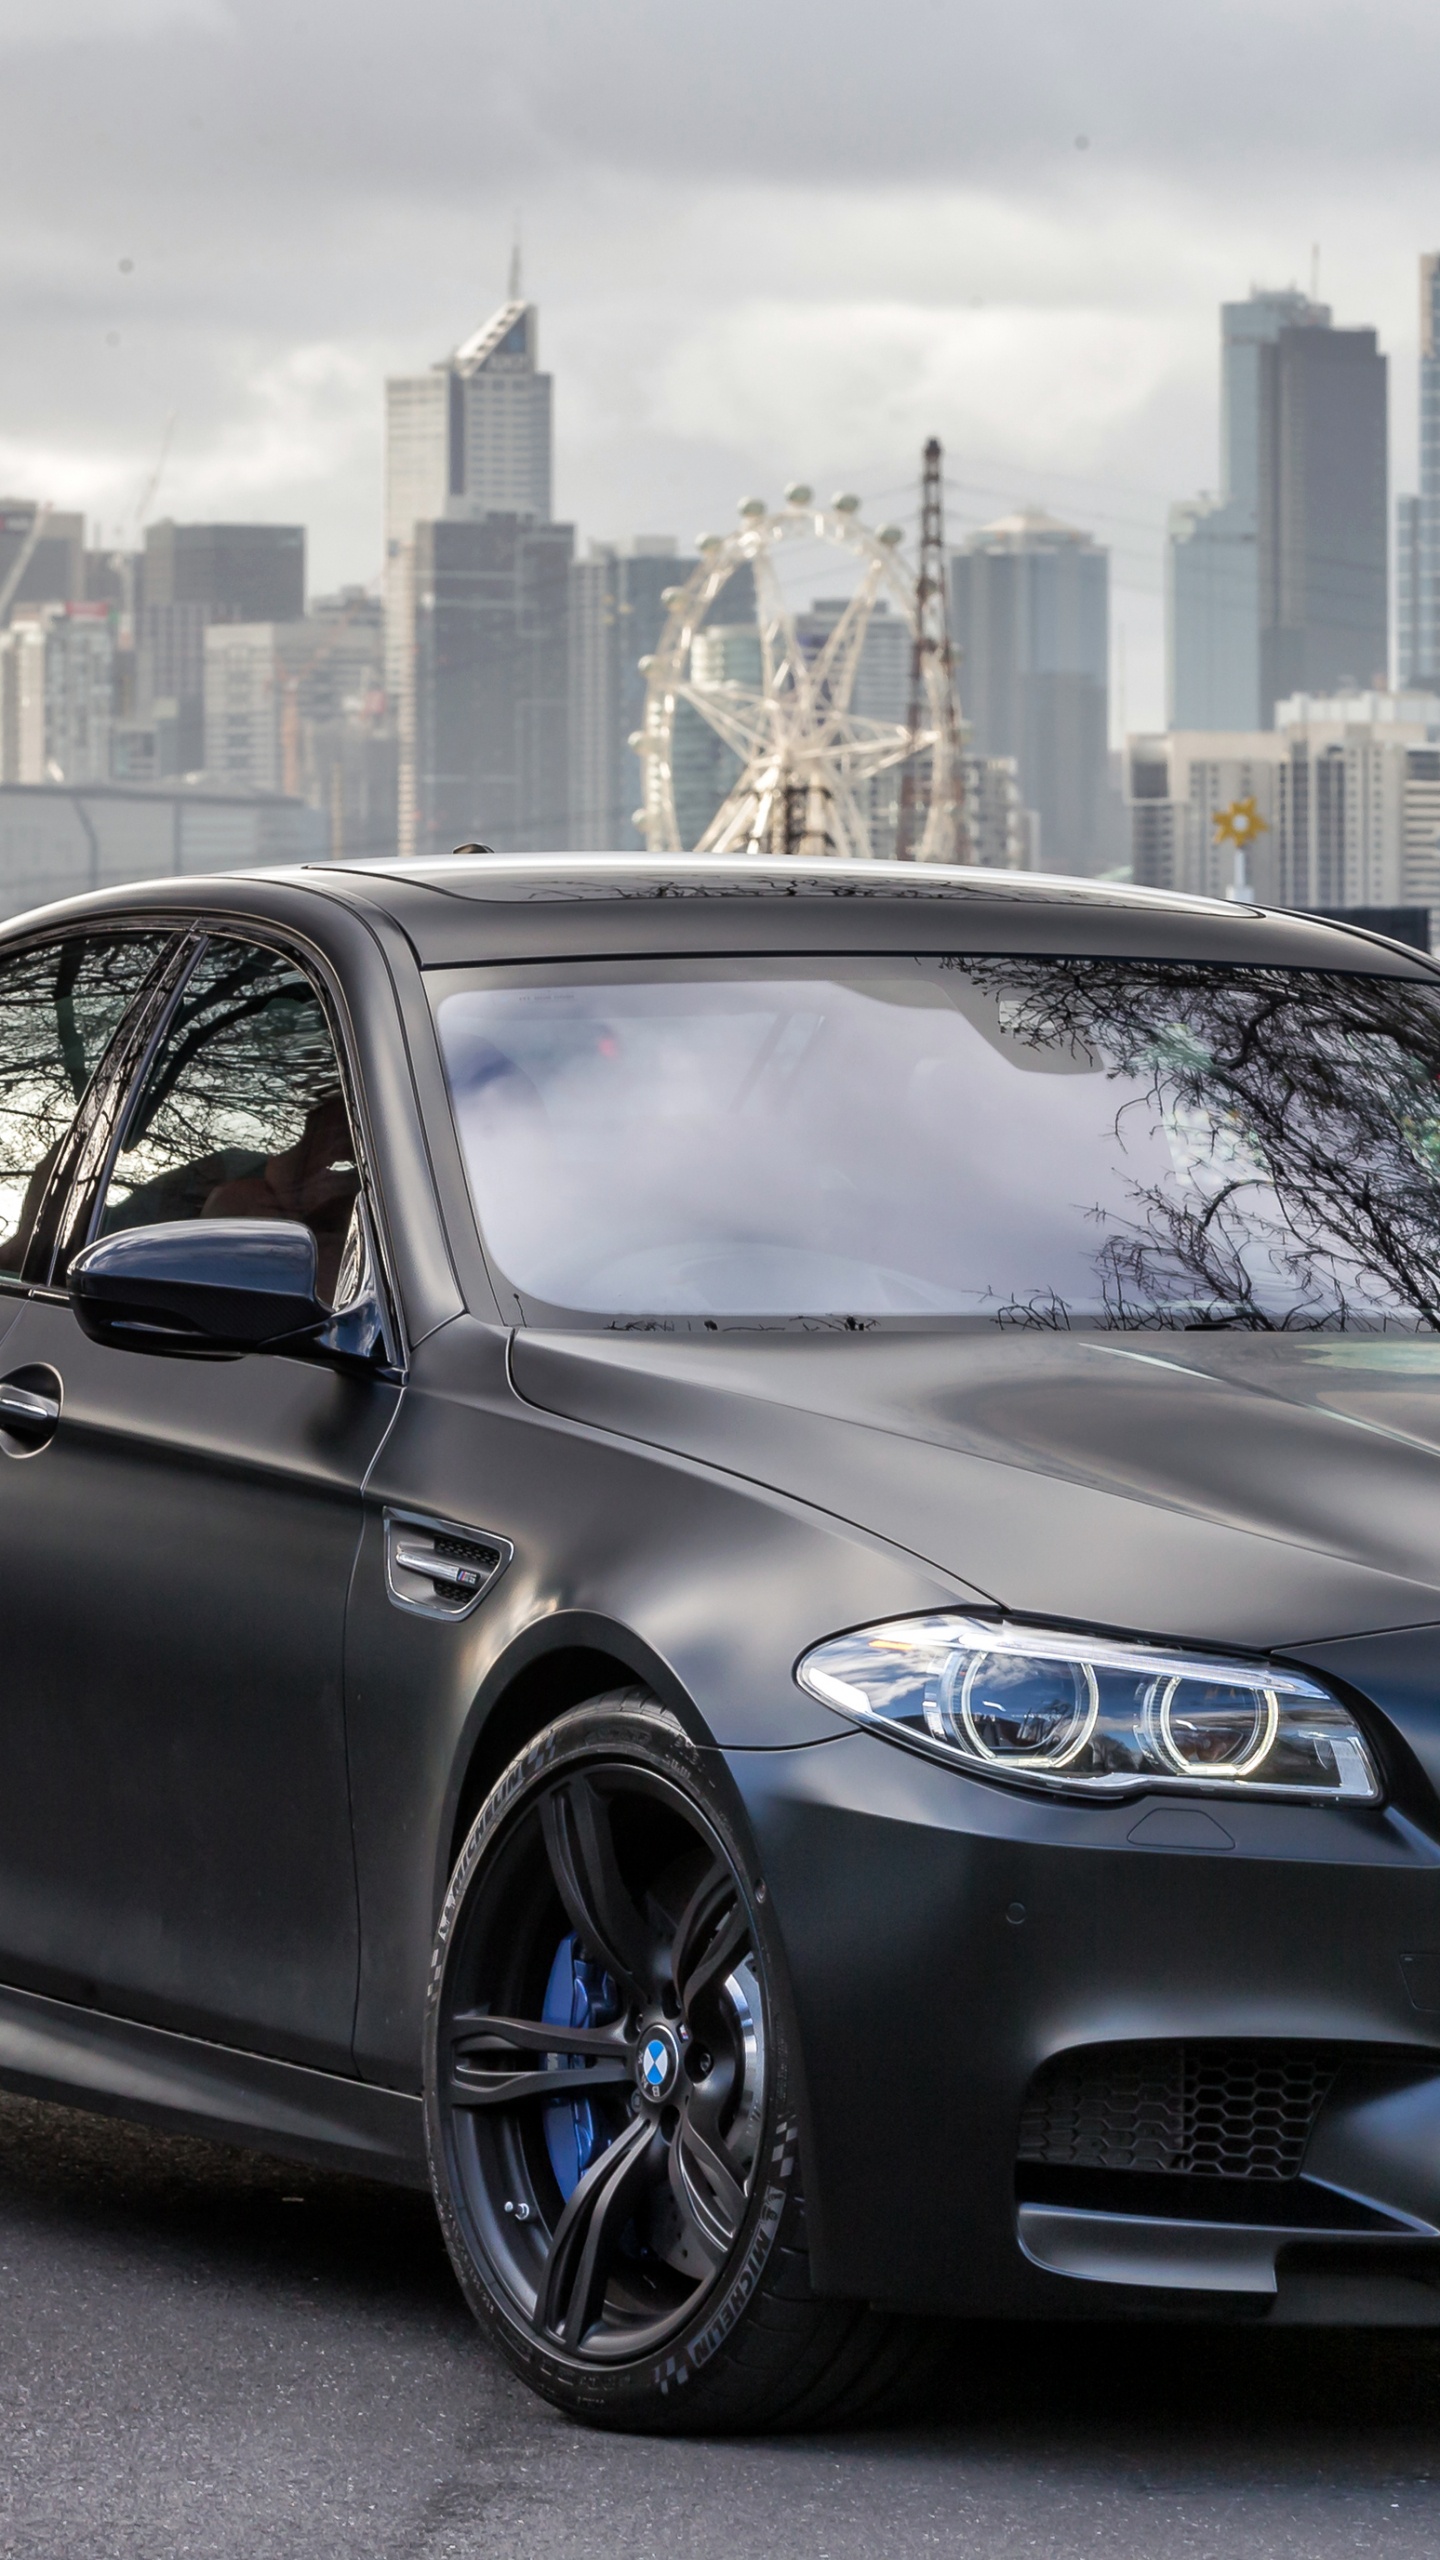 2018年BMW M5, 宝马, 宝马5系, 执行汽车, 铝合金轮毂 壁纸 1440x2560 允许